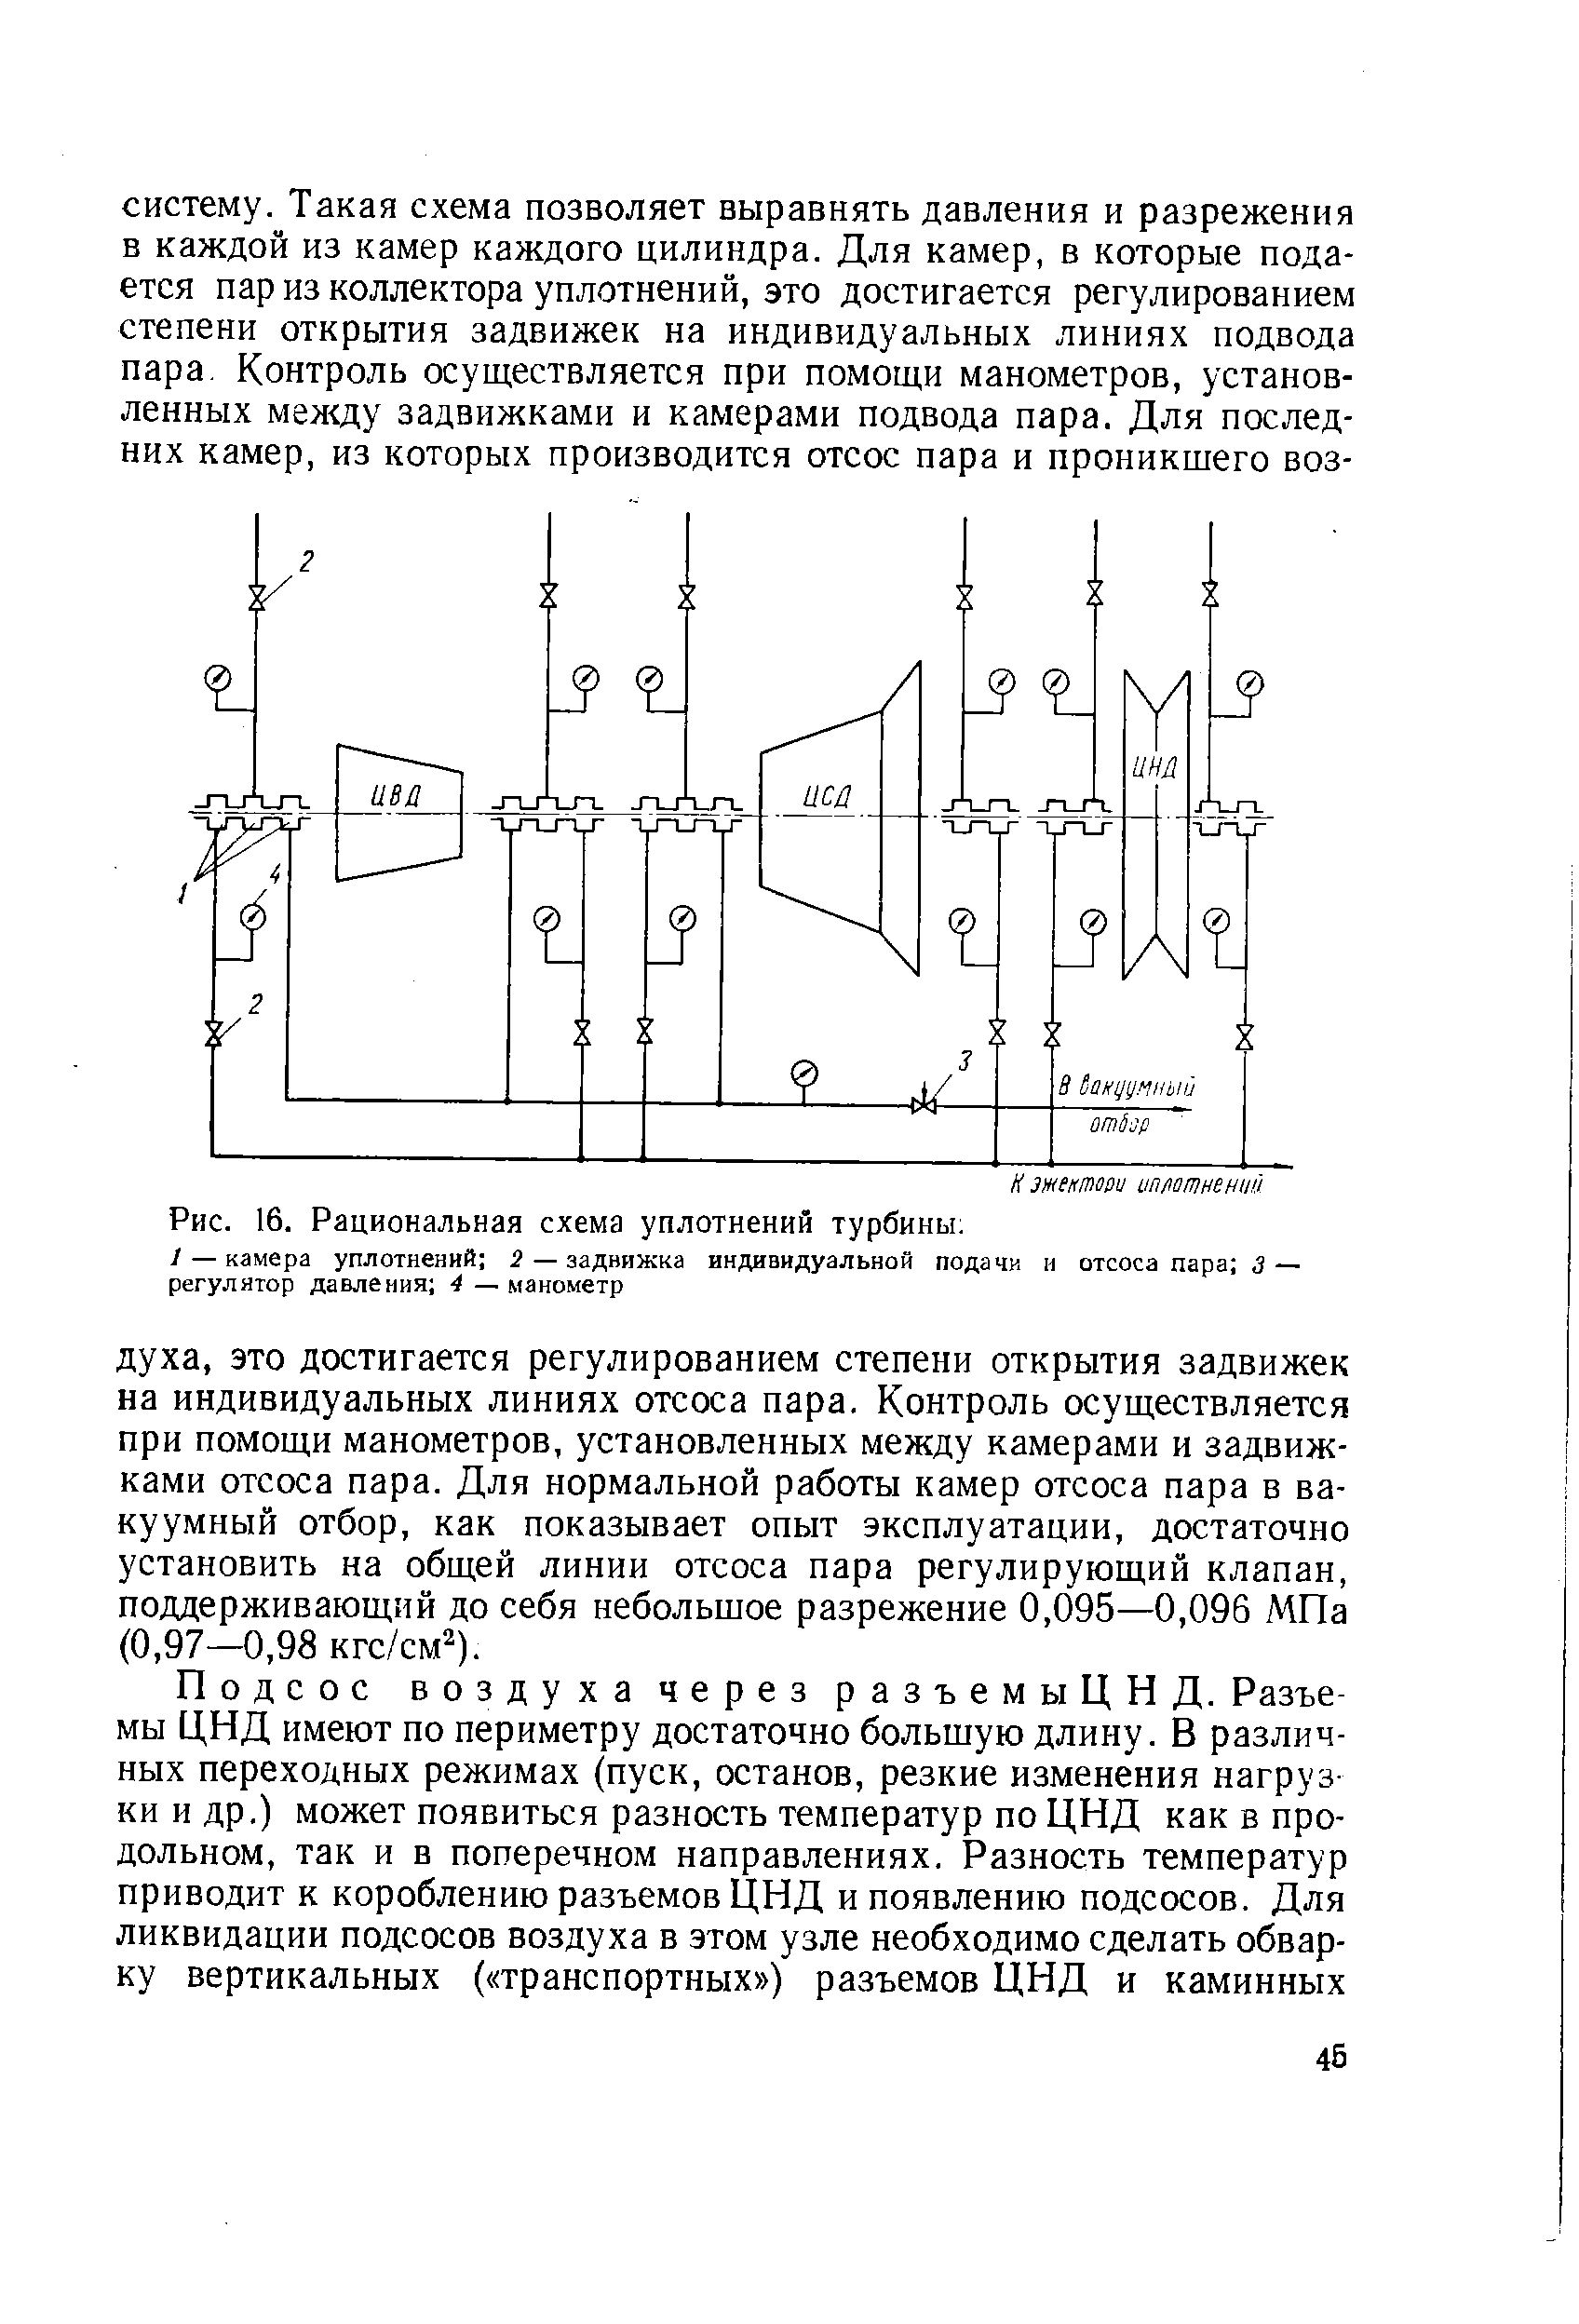 Рис. 16. Рациональная схема уплотнений турбины 
